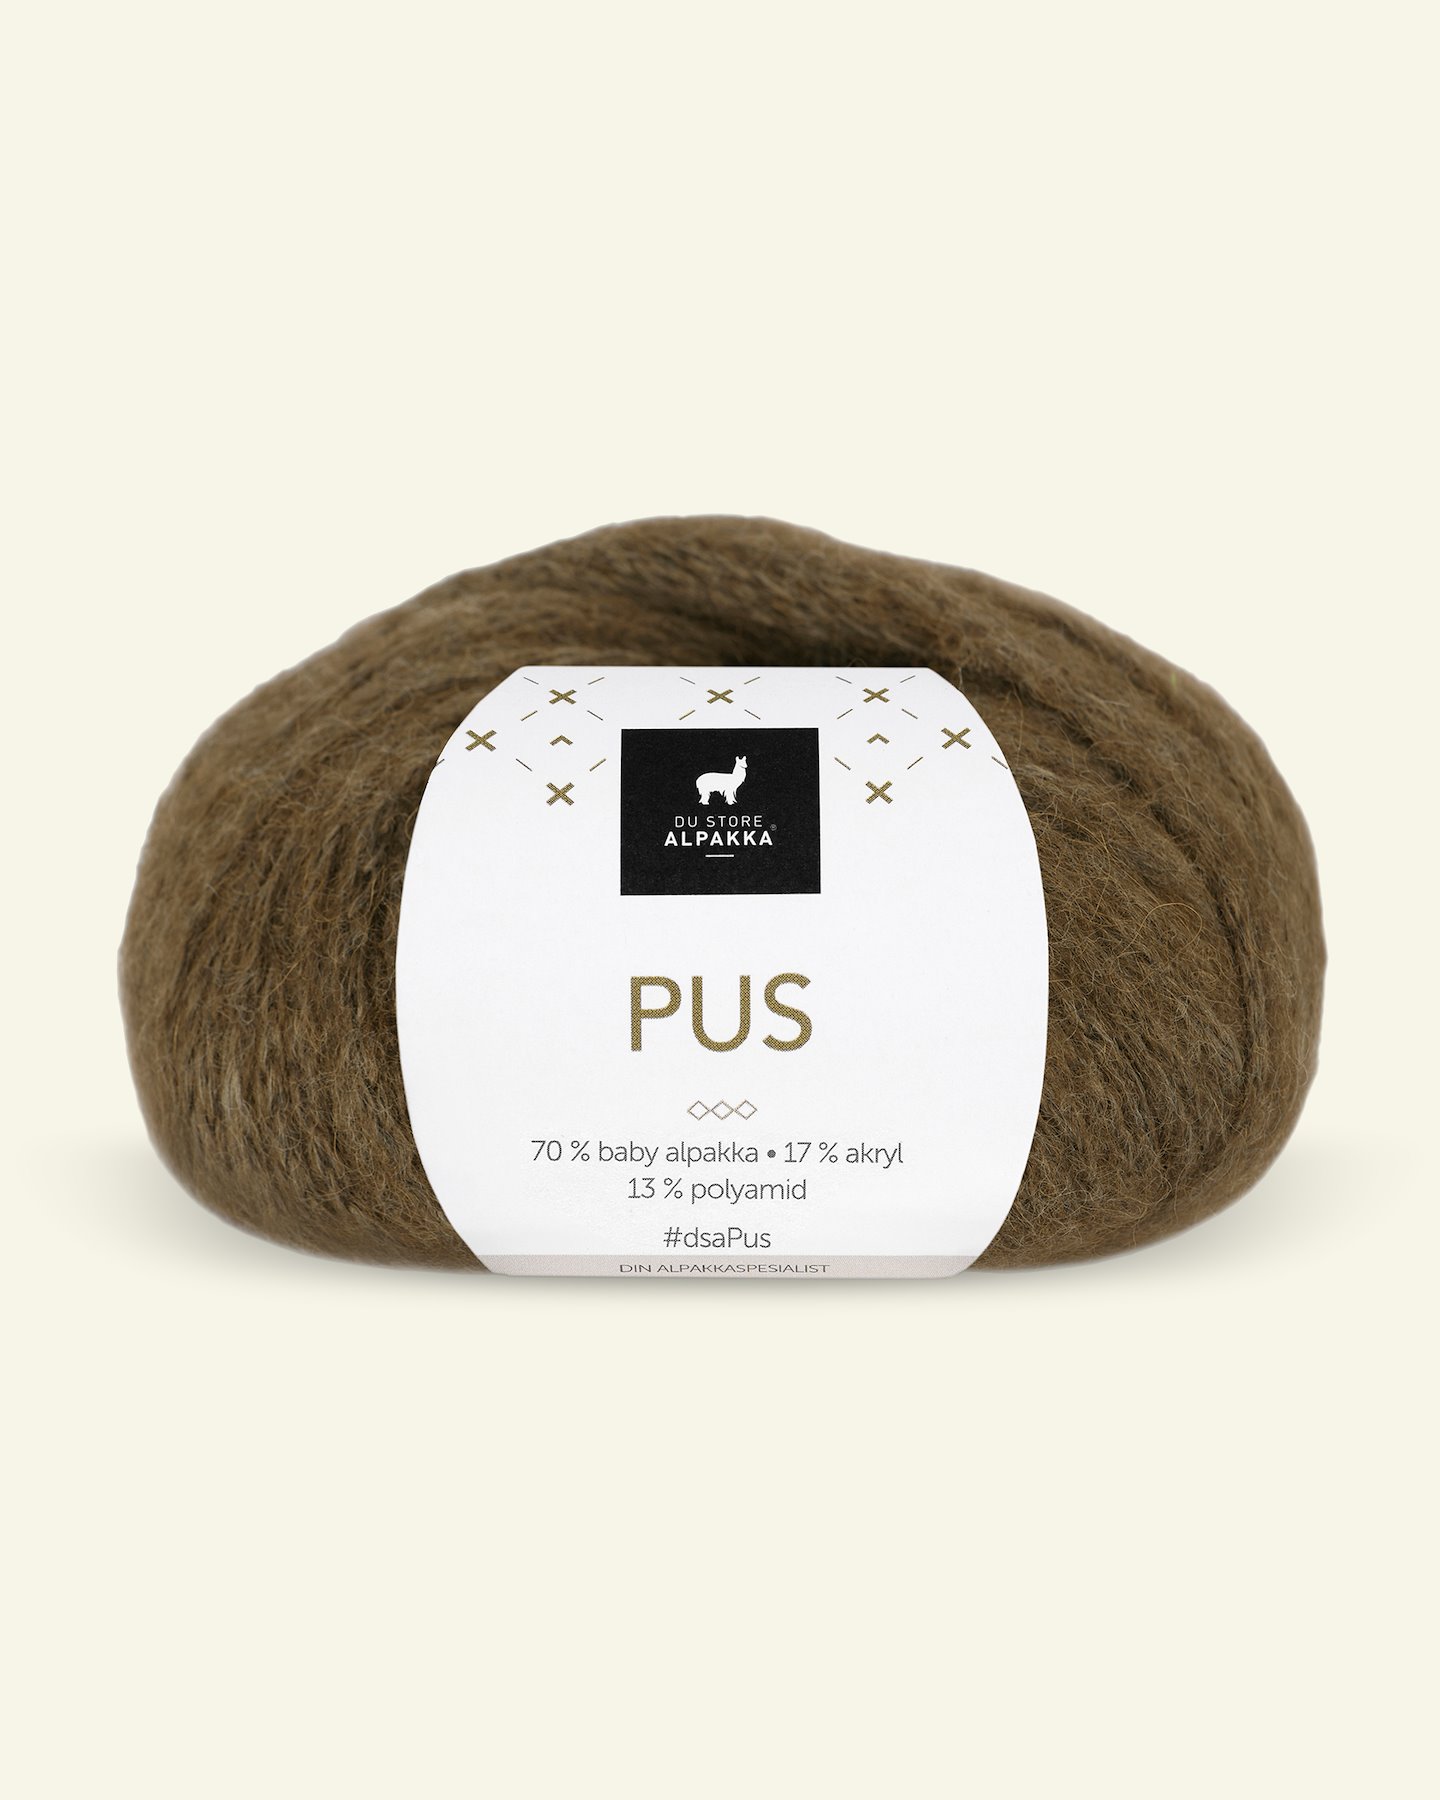 Du Store Alpakka, alpaca mixed yarn "Pus", kaki (4054) 90000734_pack